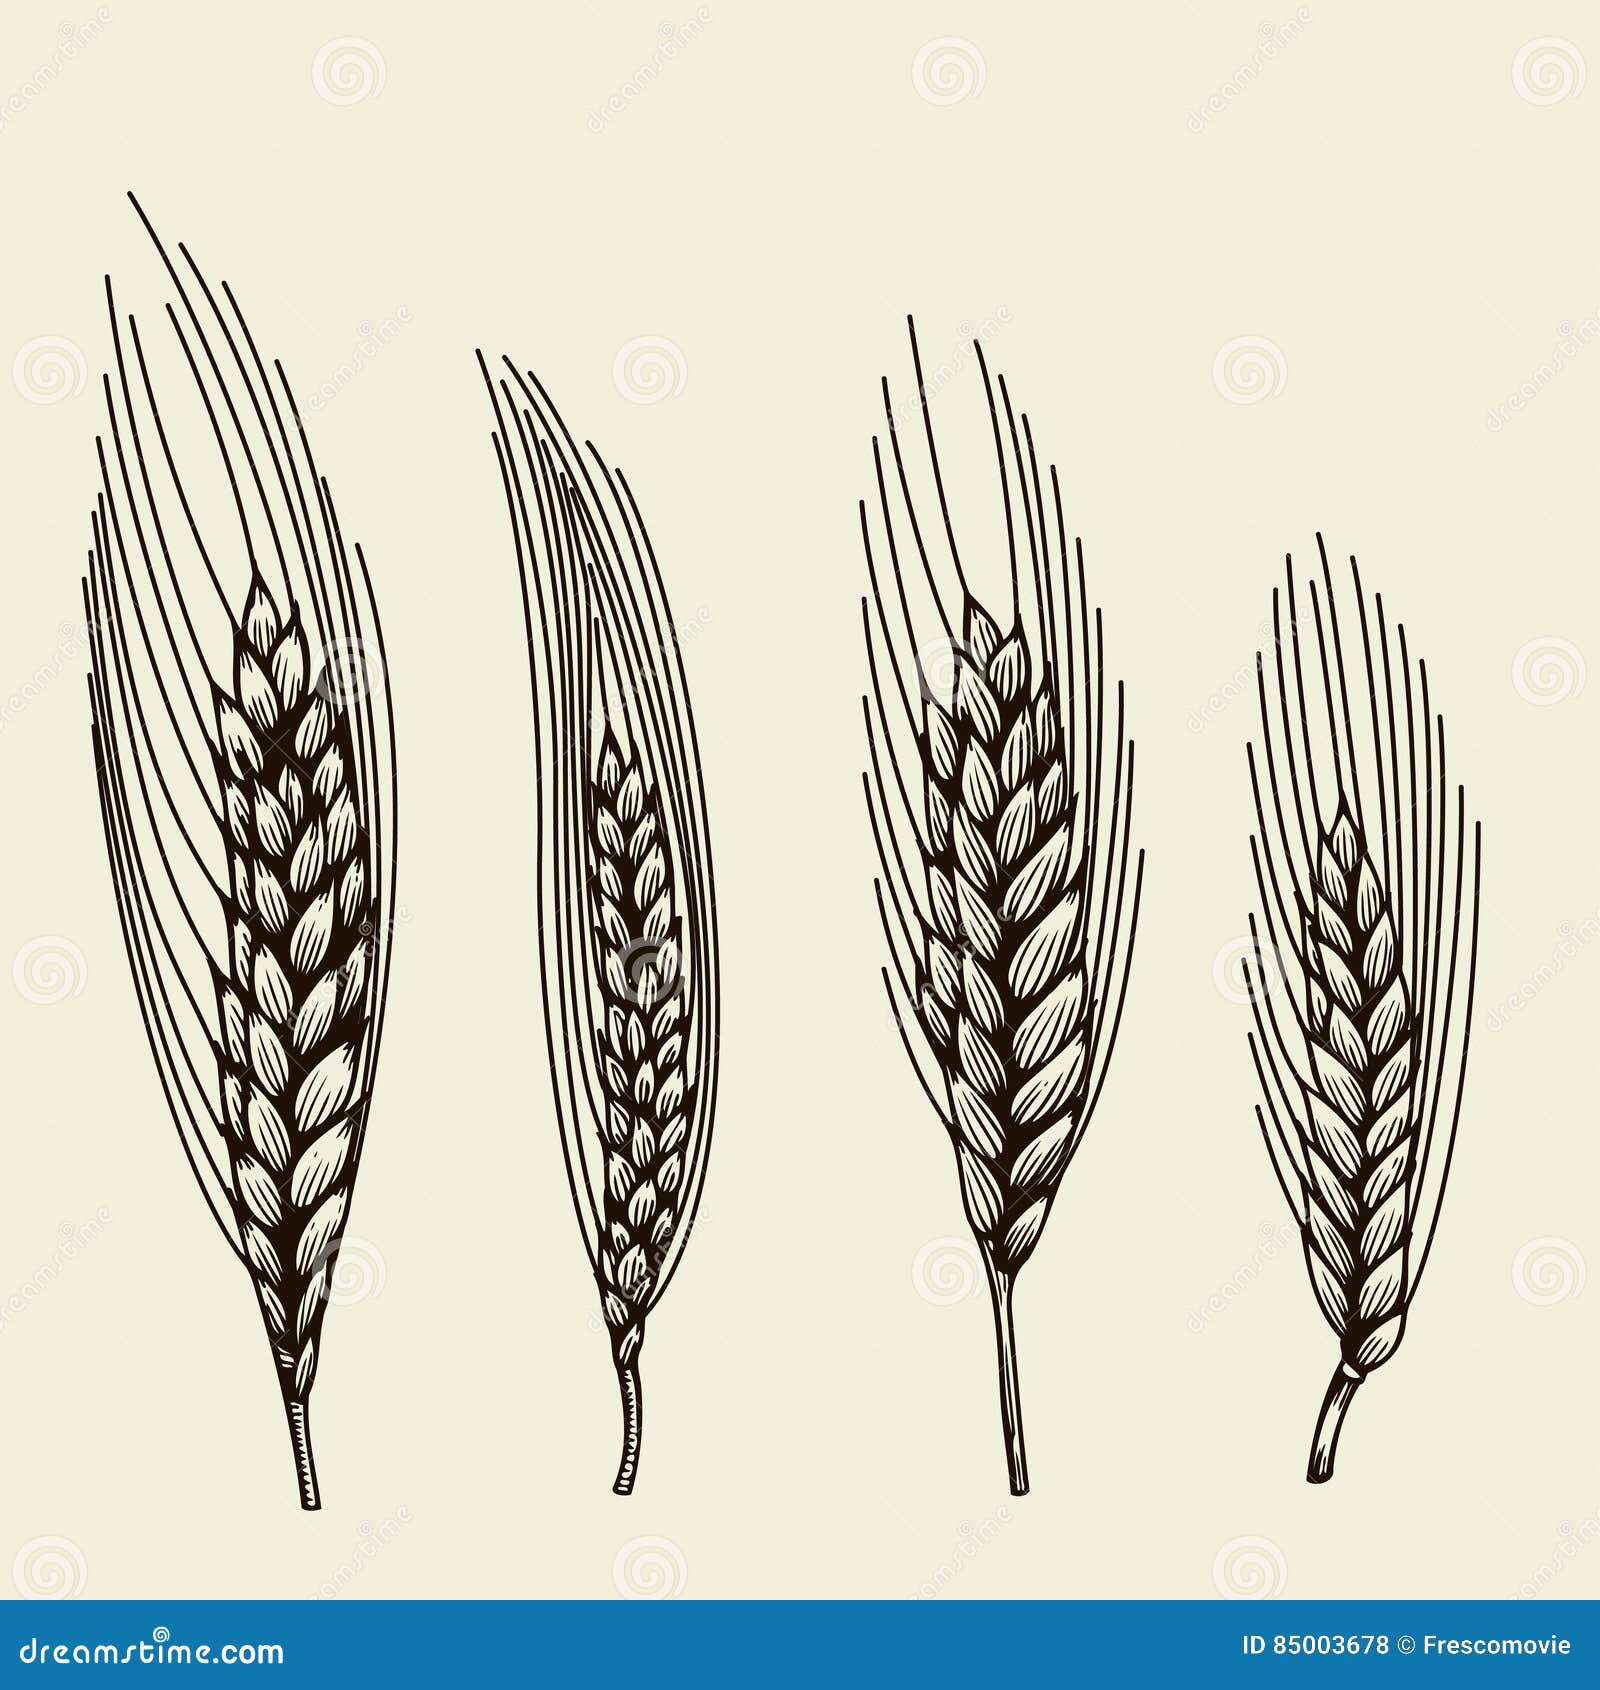 Пшеничный Колос примитивный скетч